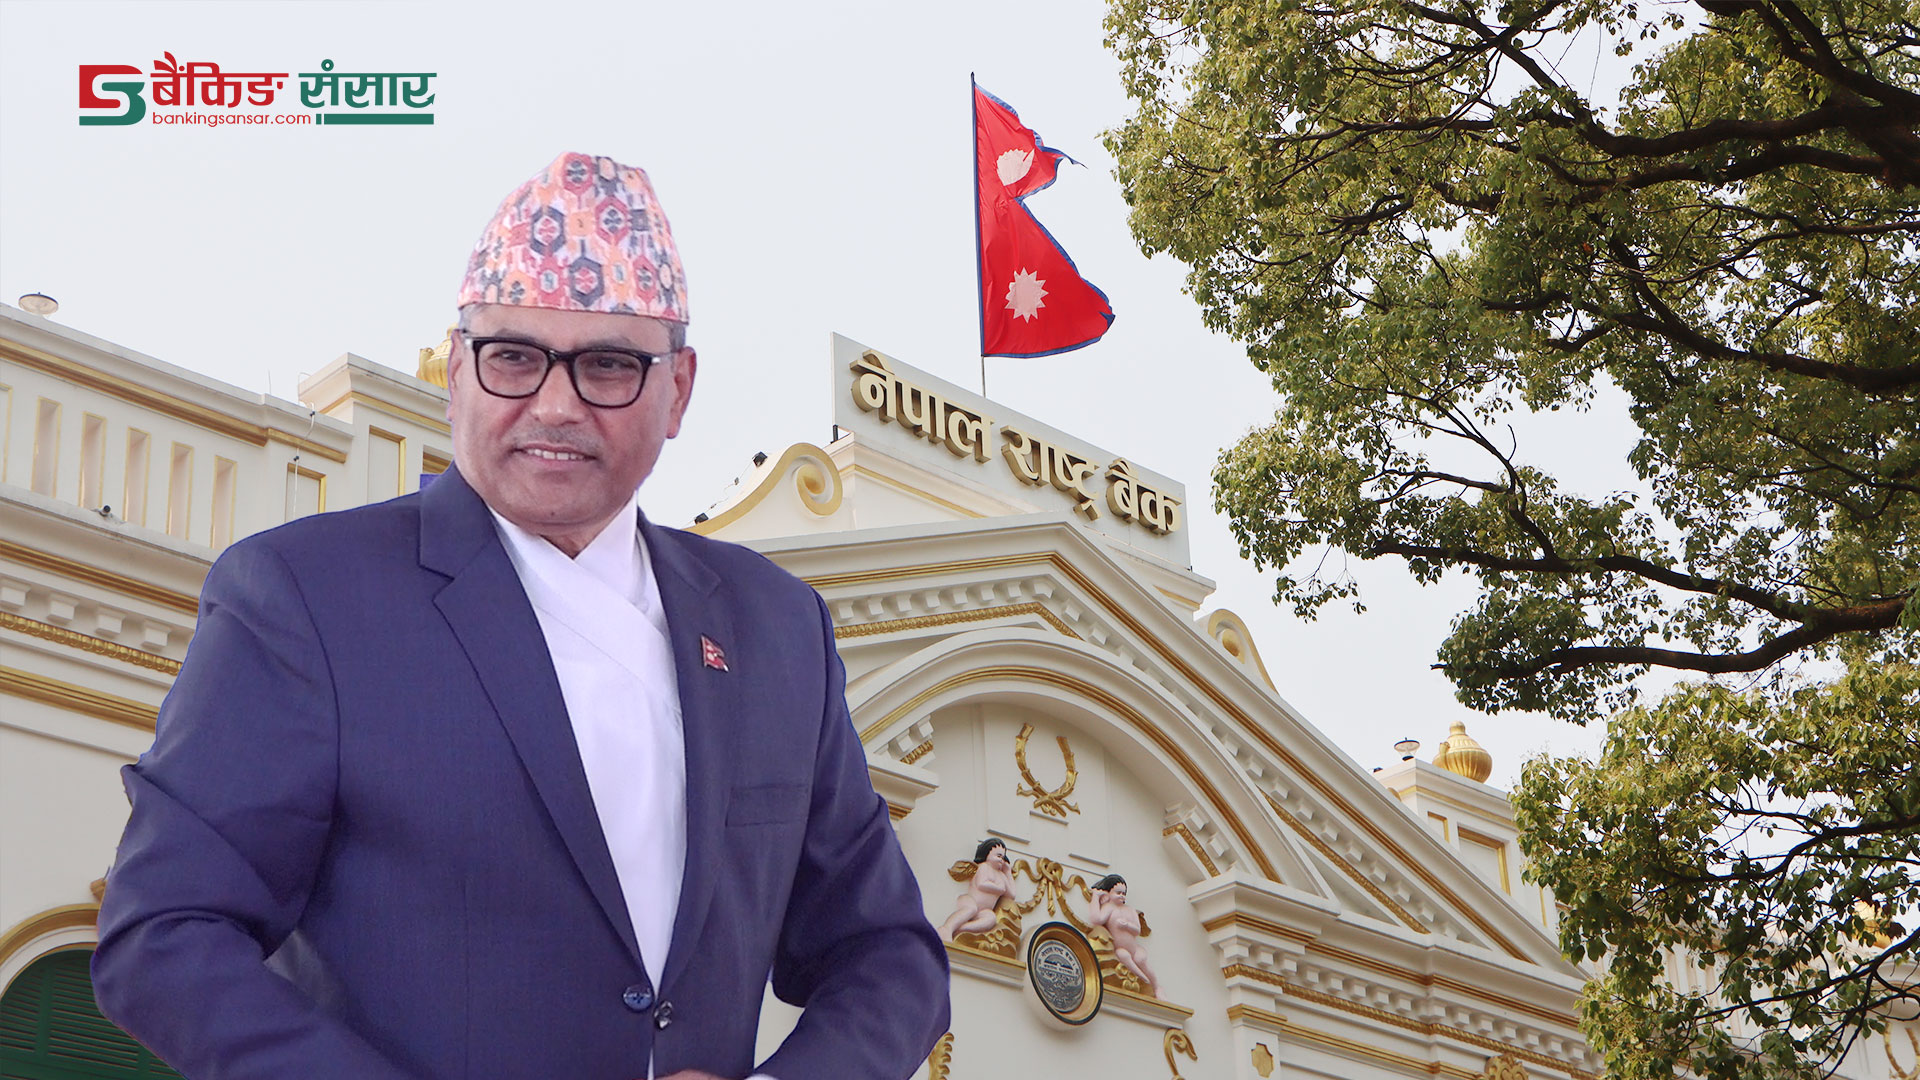 ‘सुपरिवेक्षण हुन्छ भन्दैमा बैंकहरु नढल्ने भन्ने हुँदैन, तर नेपालमा बैंकहरु सुरक्षित छन्’ : गभर्नर अधिकारी